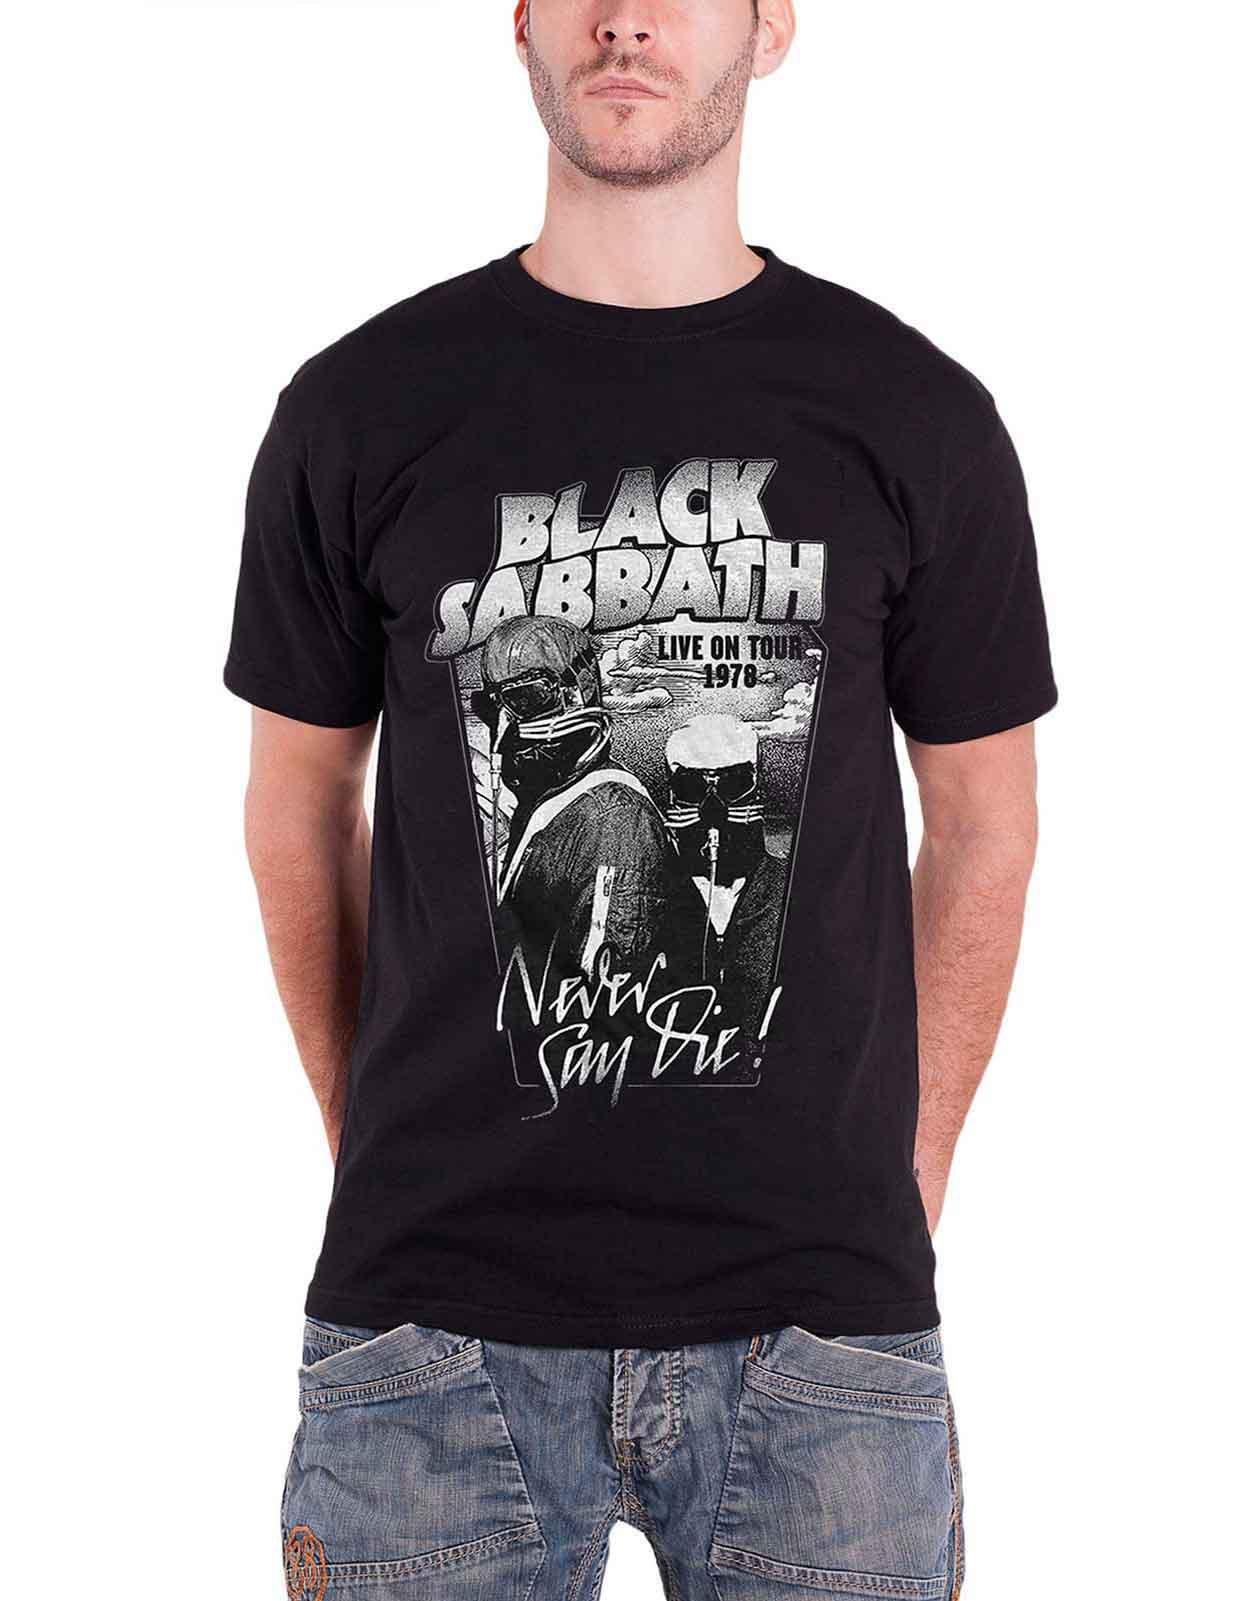 Черная футболка Never Say Die Live on Tour 1978 Black Sabbath, черный black sabbath never say die lp щетка для lp brush it набор